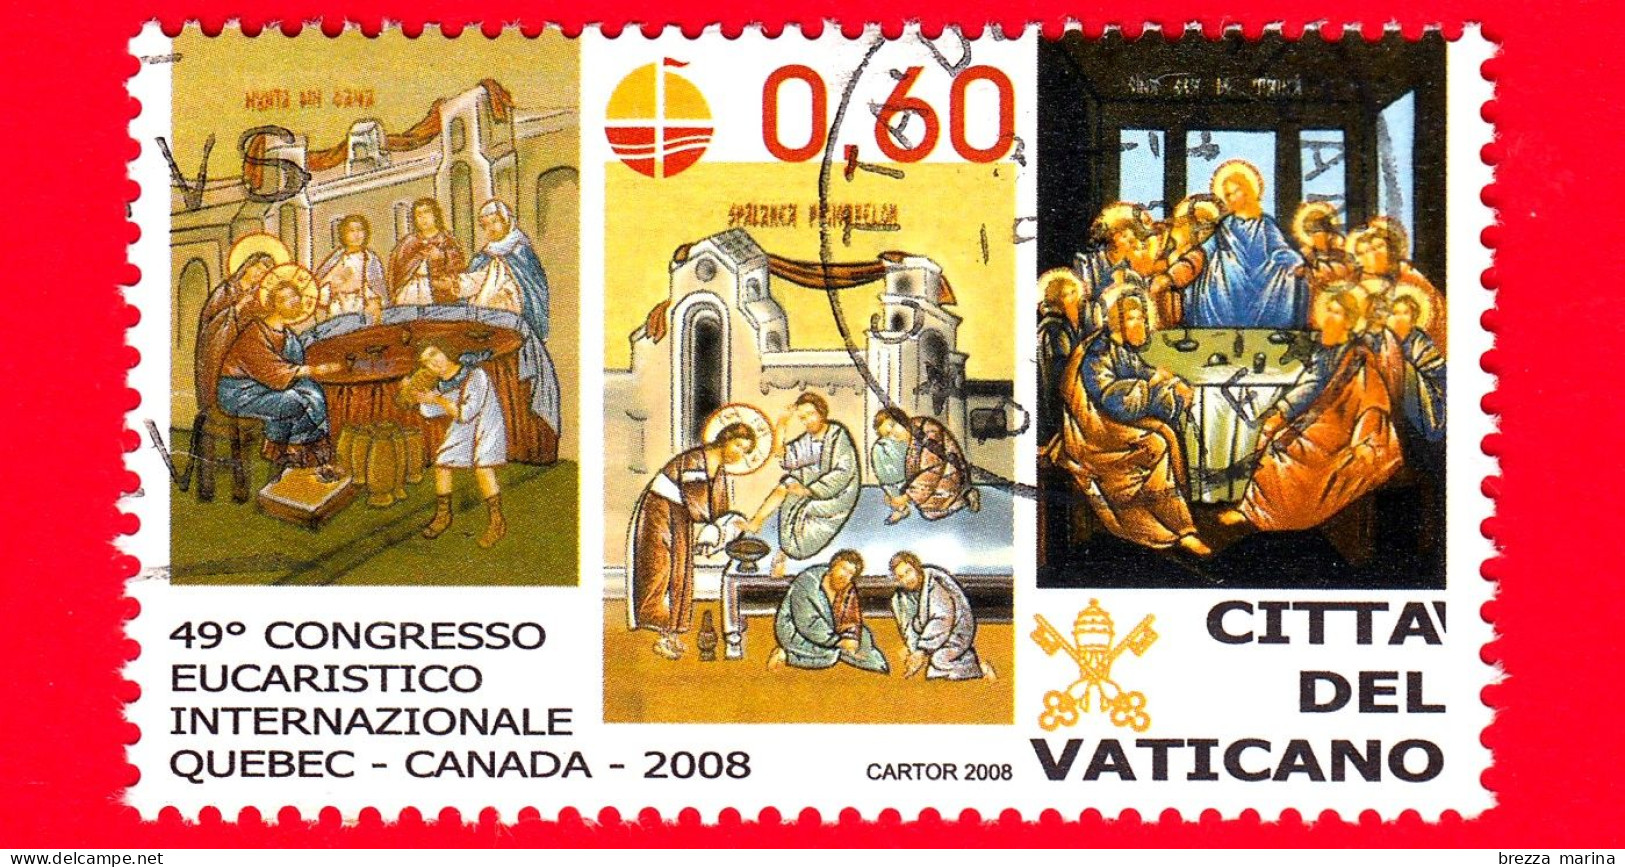 VATICANO - Usato - 2008 - Congresso Eucaristico Internazionale - Nozze Di Cana, Lavanda Dei Piedi E Ultima Cena - 0.60 - Used Stamps